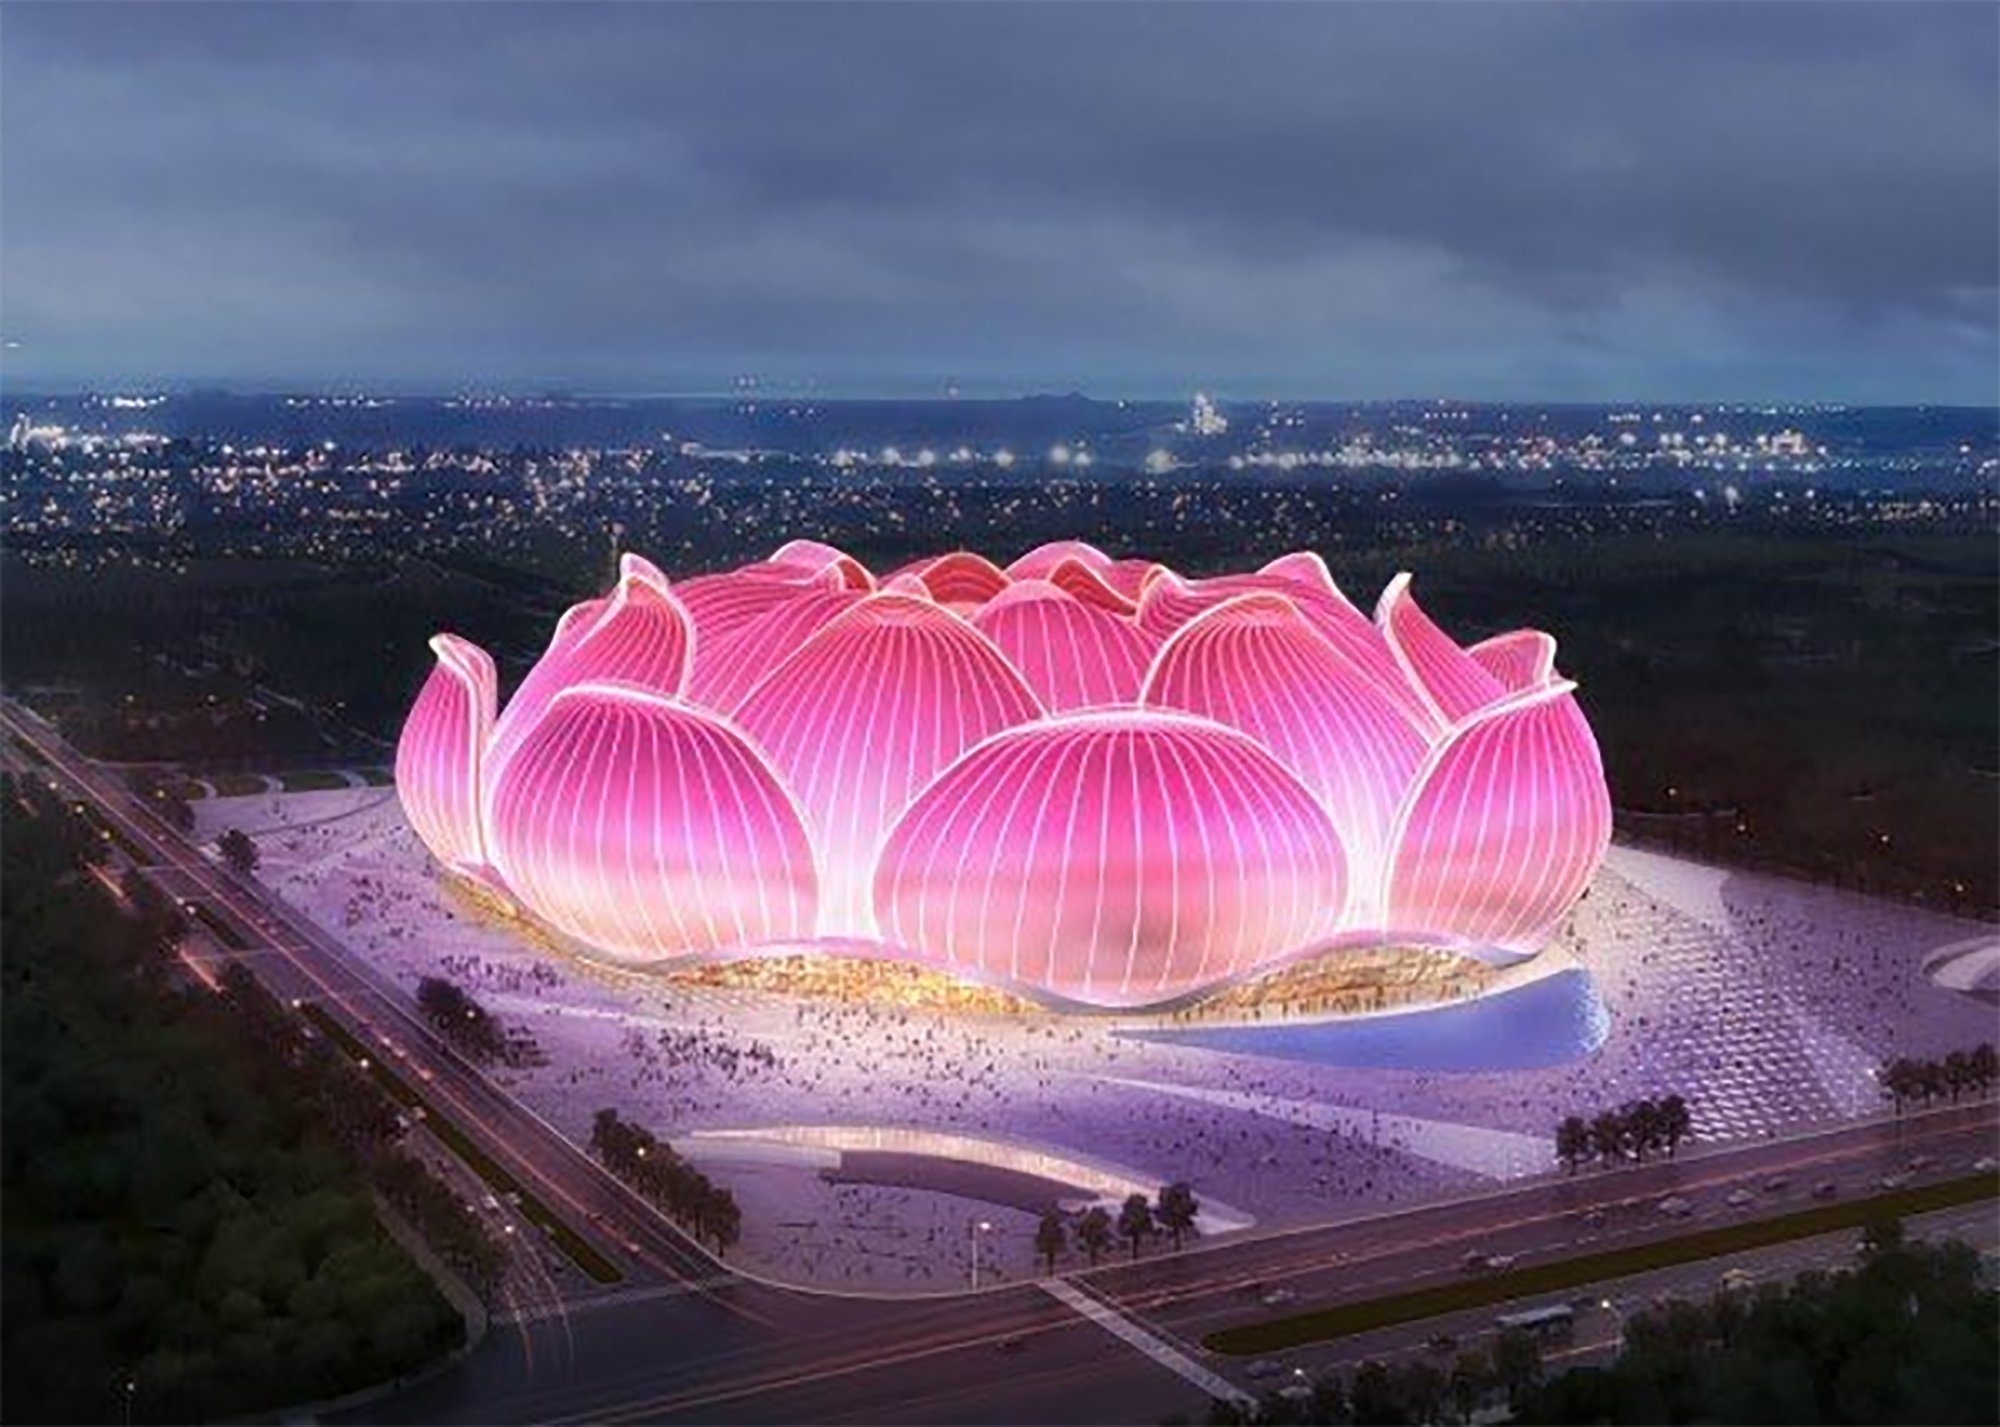 Superará el Camp Nou: China construye el estadio de fútbol más grande del mundo